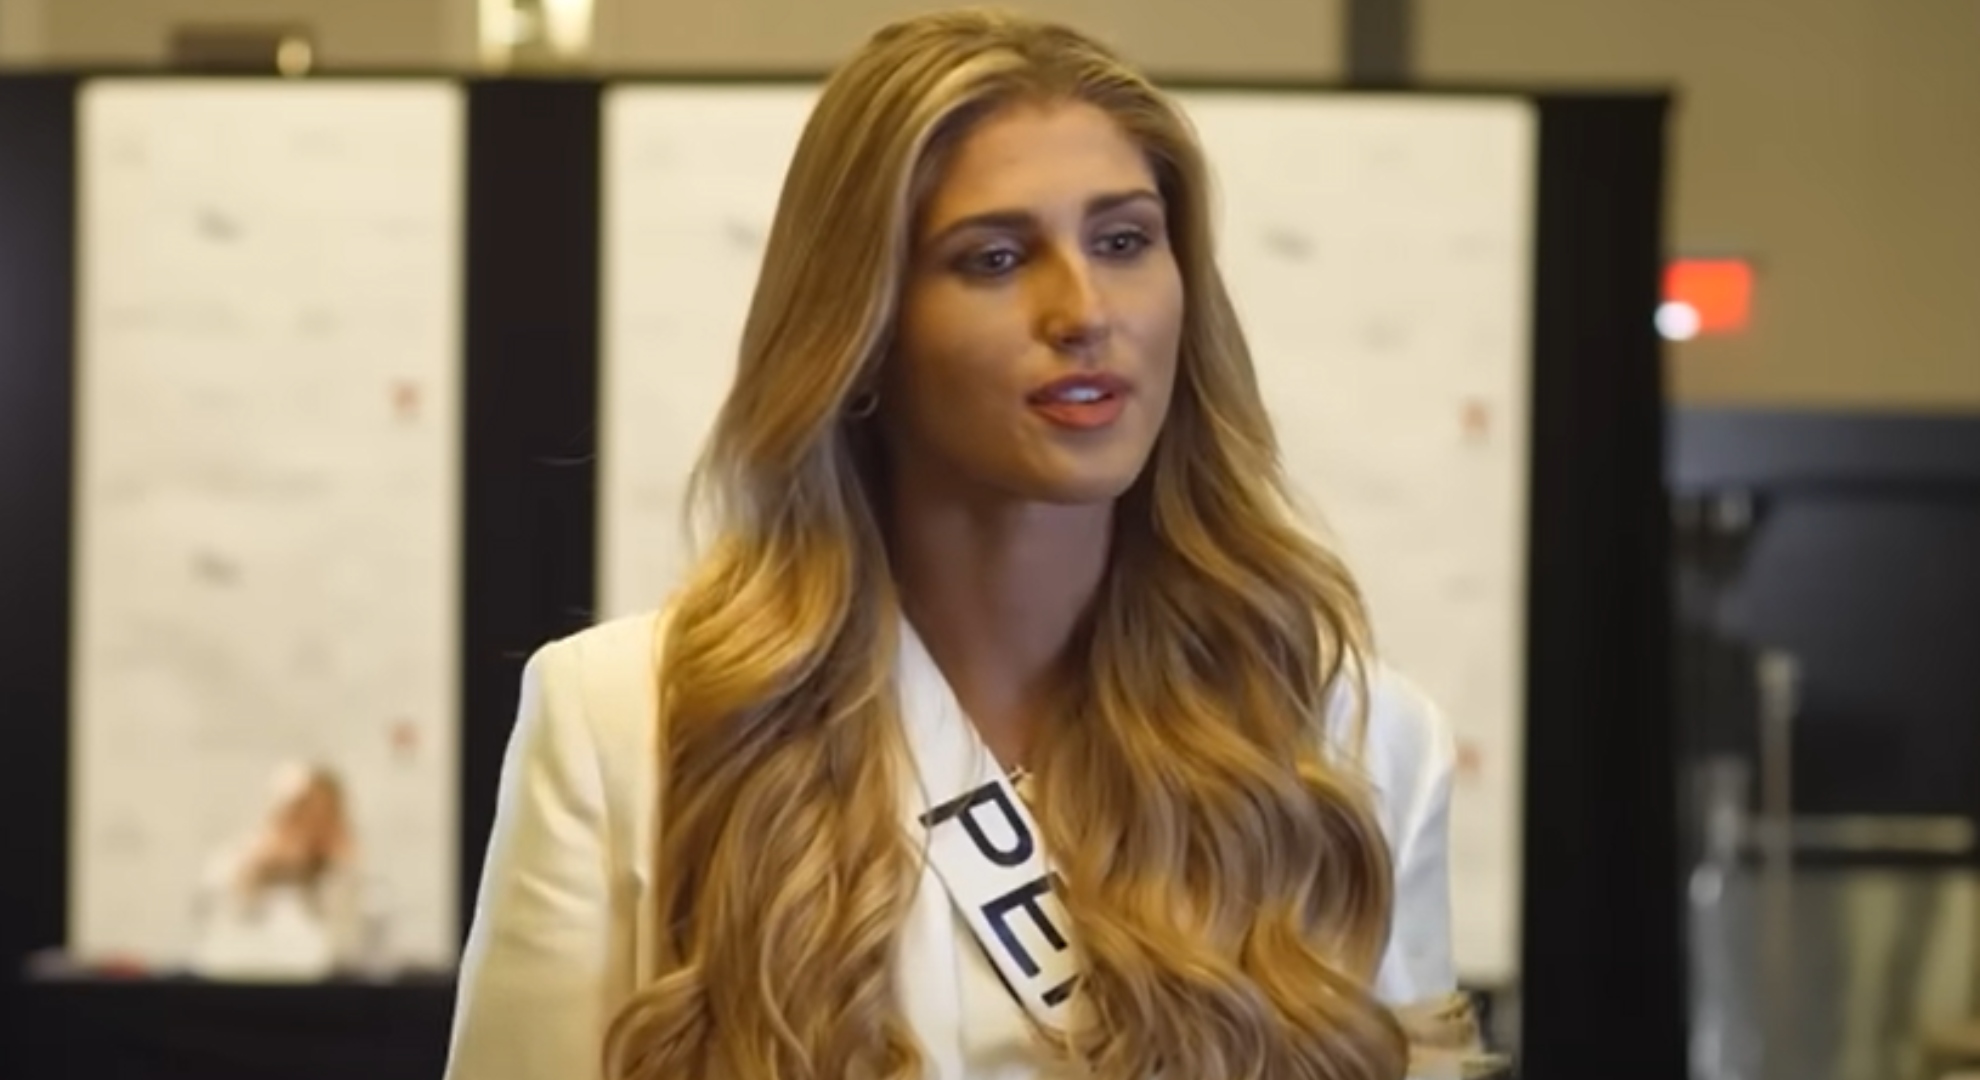 La entrevista de Alessia Rovegno en el Miss Universo 2022: “Me han criticado mucho porque soy rubia”